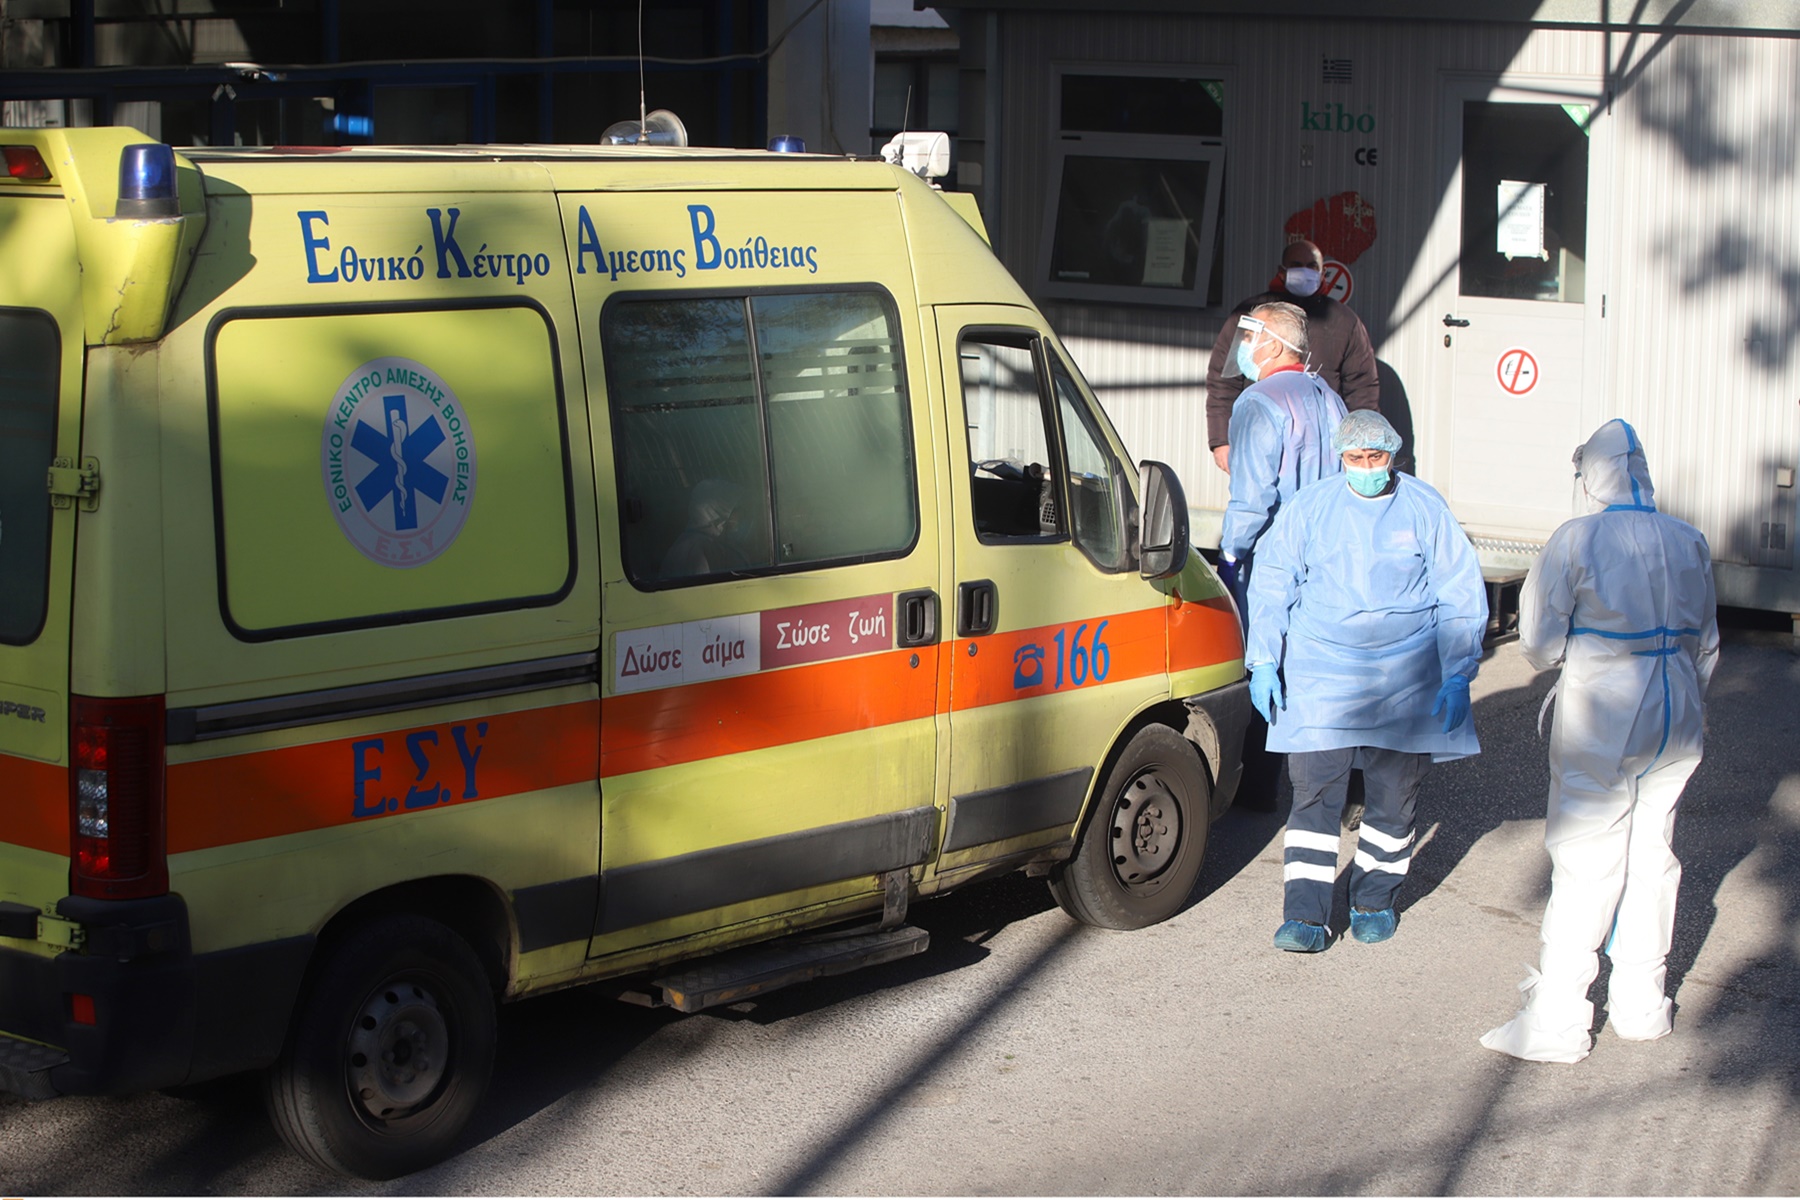 Έγκυες – Ιπποκράτειο Θεσσαλονίκης: Άλλες τρεις γυναίκες με κορονοϊό στο νοσοκομείο – Βρίσκονται σε κύηση